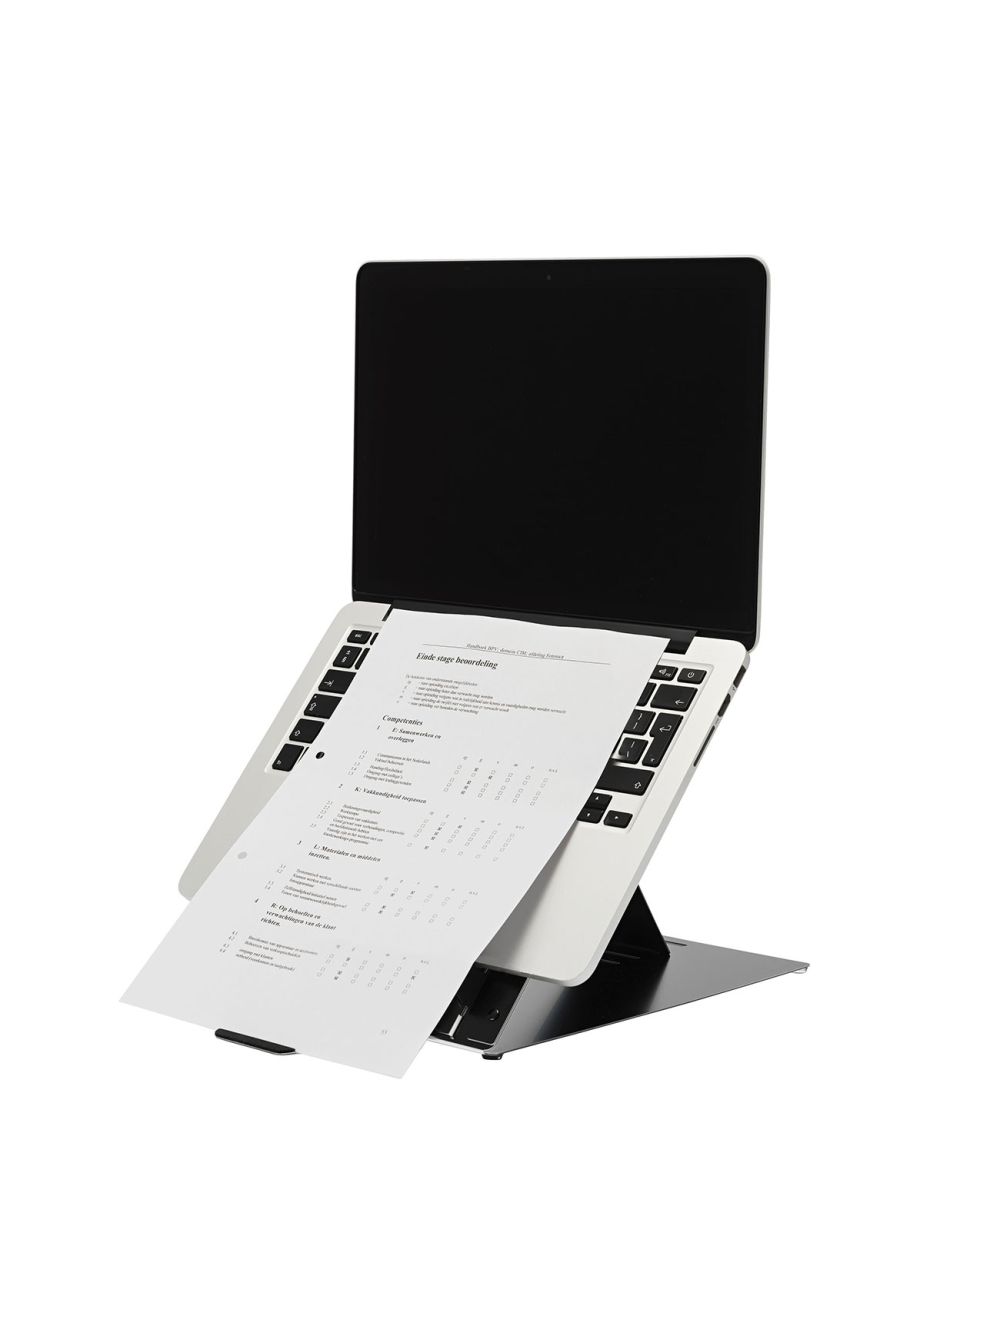 Support pour ordinateur portable Desq avec porte-documents 